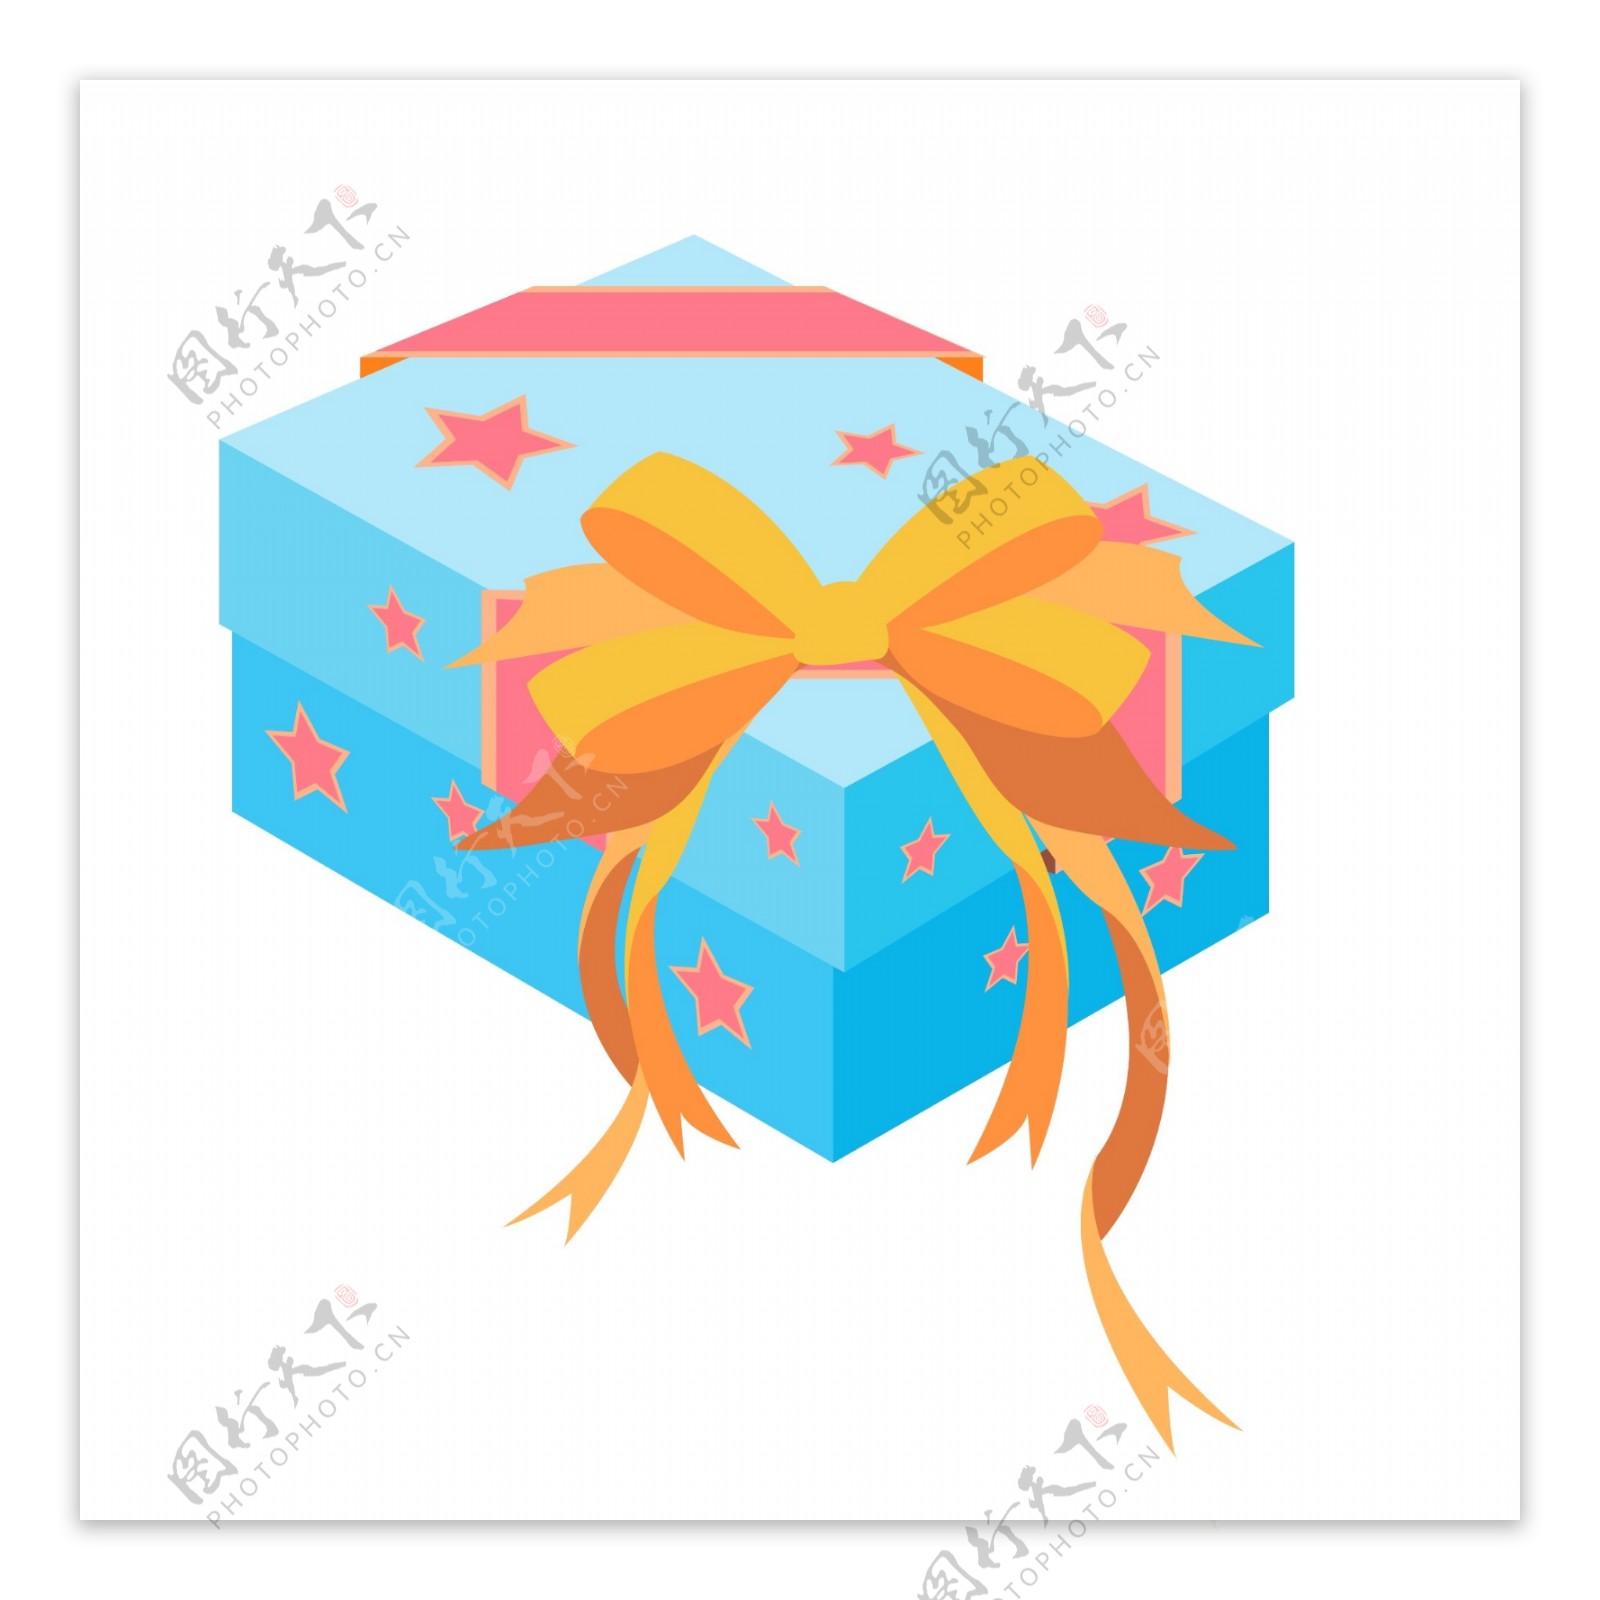 蝴蝶结彩带礼品盒礼物盒可商用元素